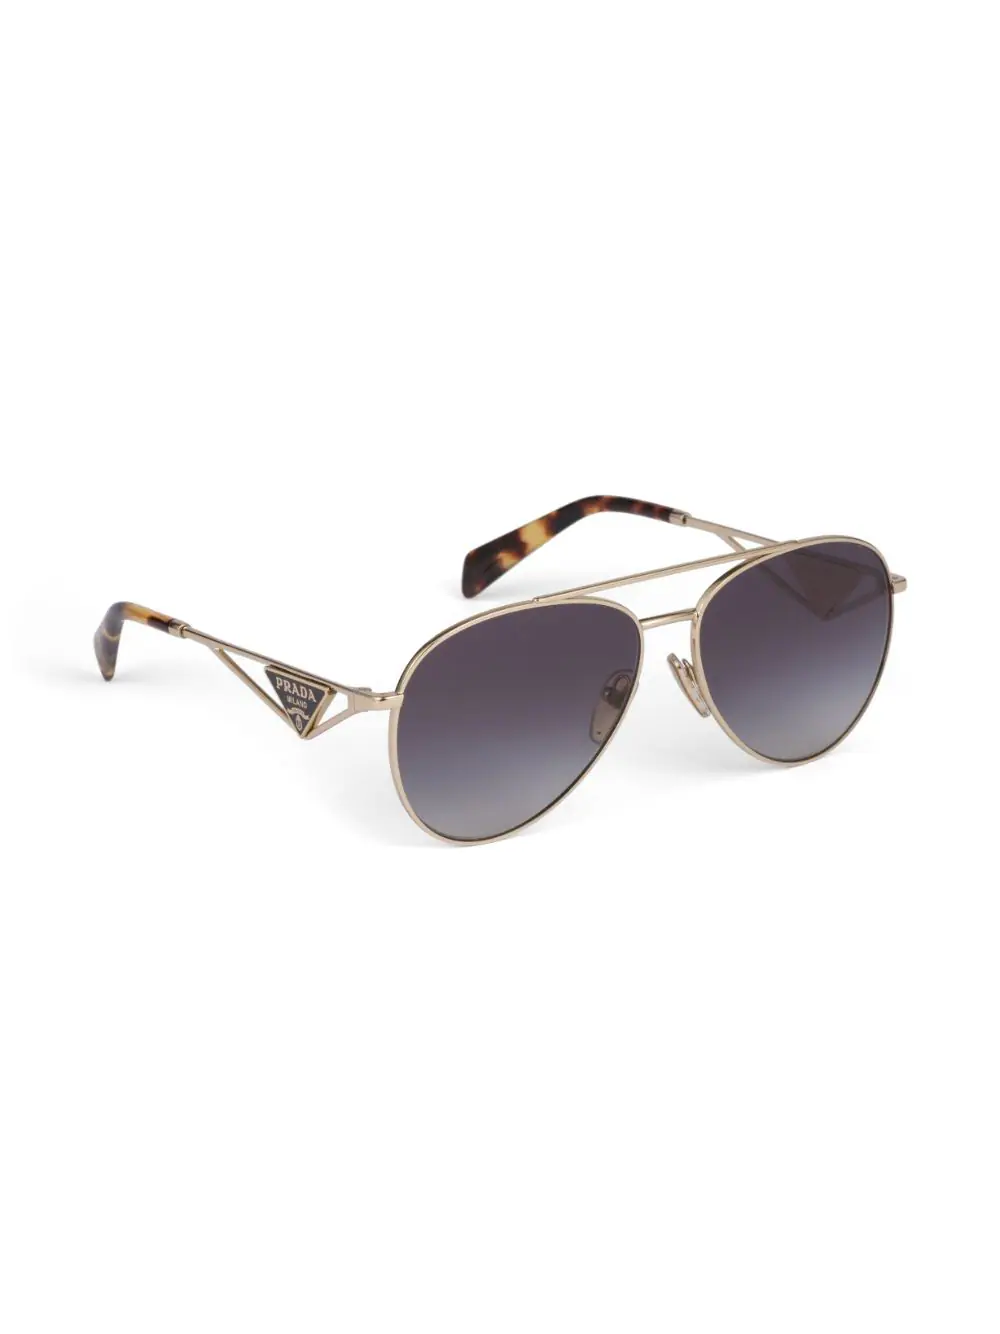 Symbole pilot-frame Sunglasses from Prada